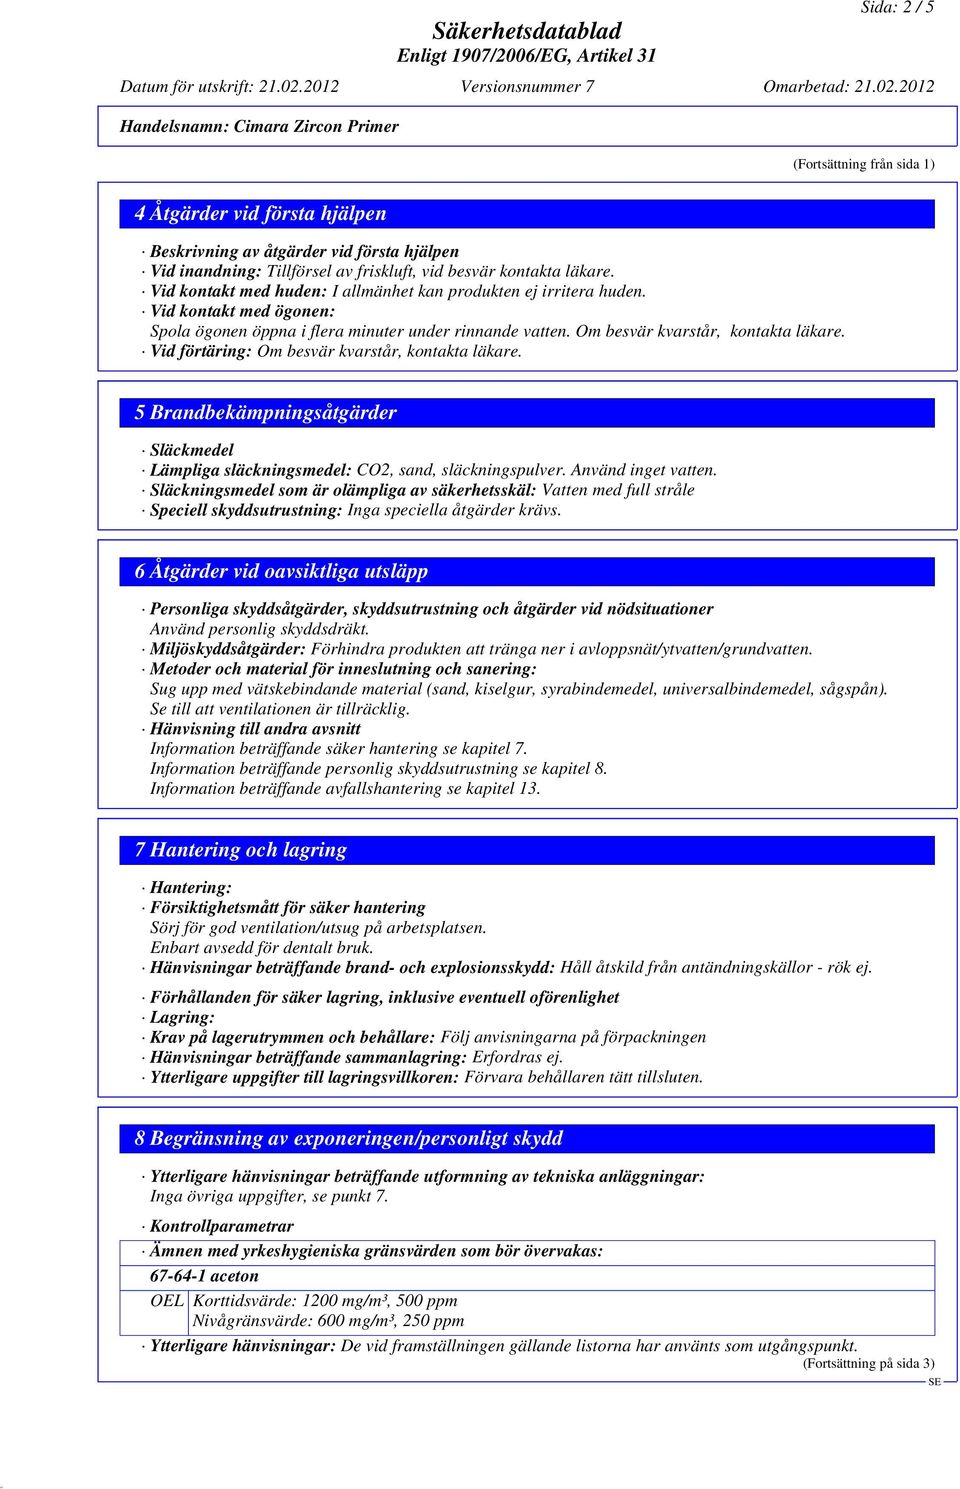 2012 Handelsnamn: Cimara Zircon Primer (Fortsättning från sida 1) 4 Åtgärder vid första hjälpen Beskrivning av åtgärder vid första hjälpen Vid inandning: Tillförsel av friskluft, vid besvär kontakta